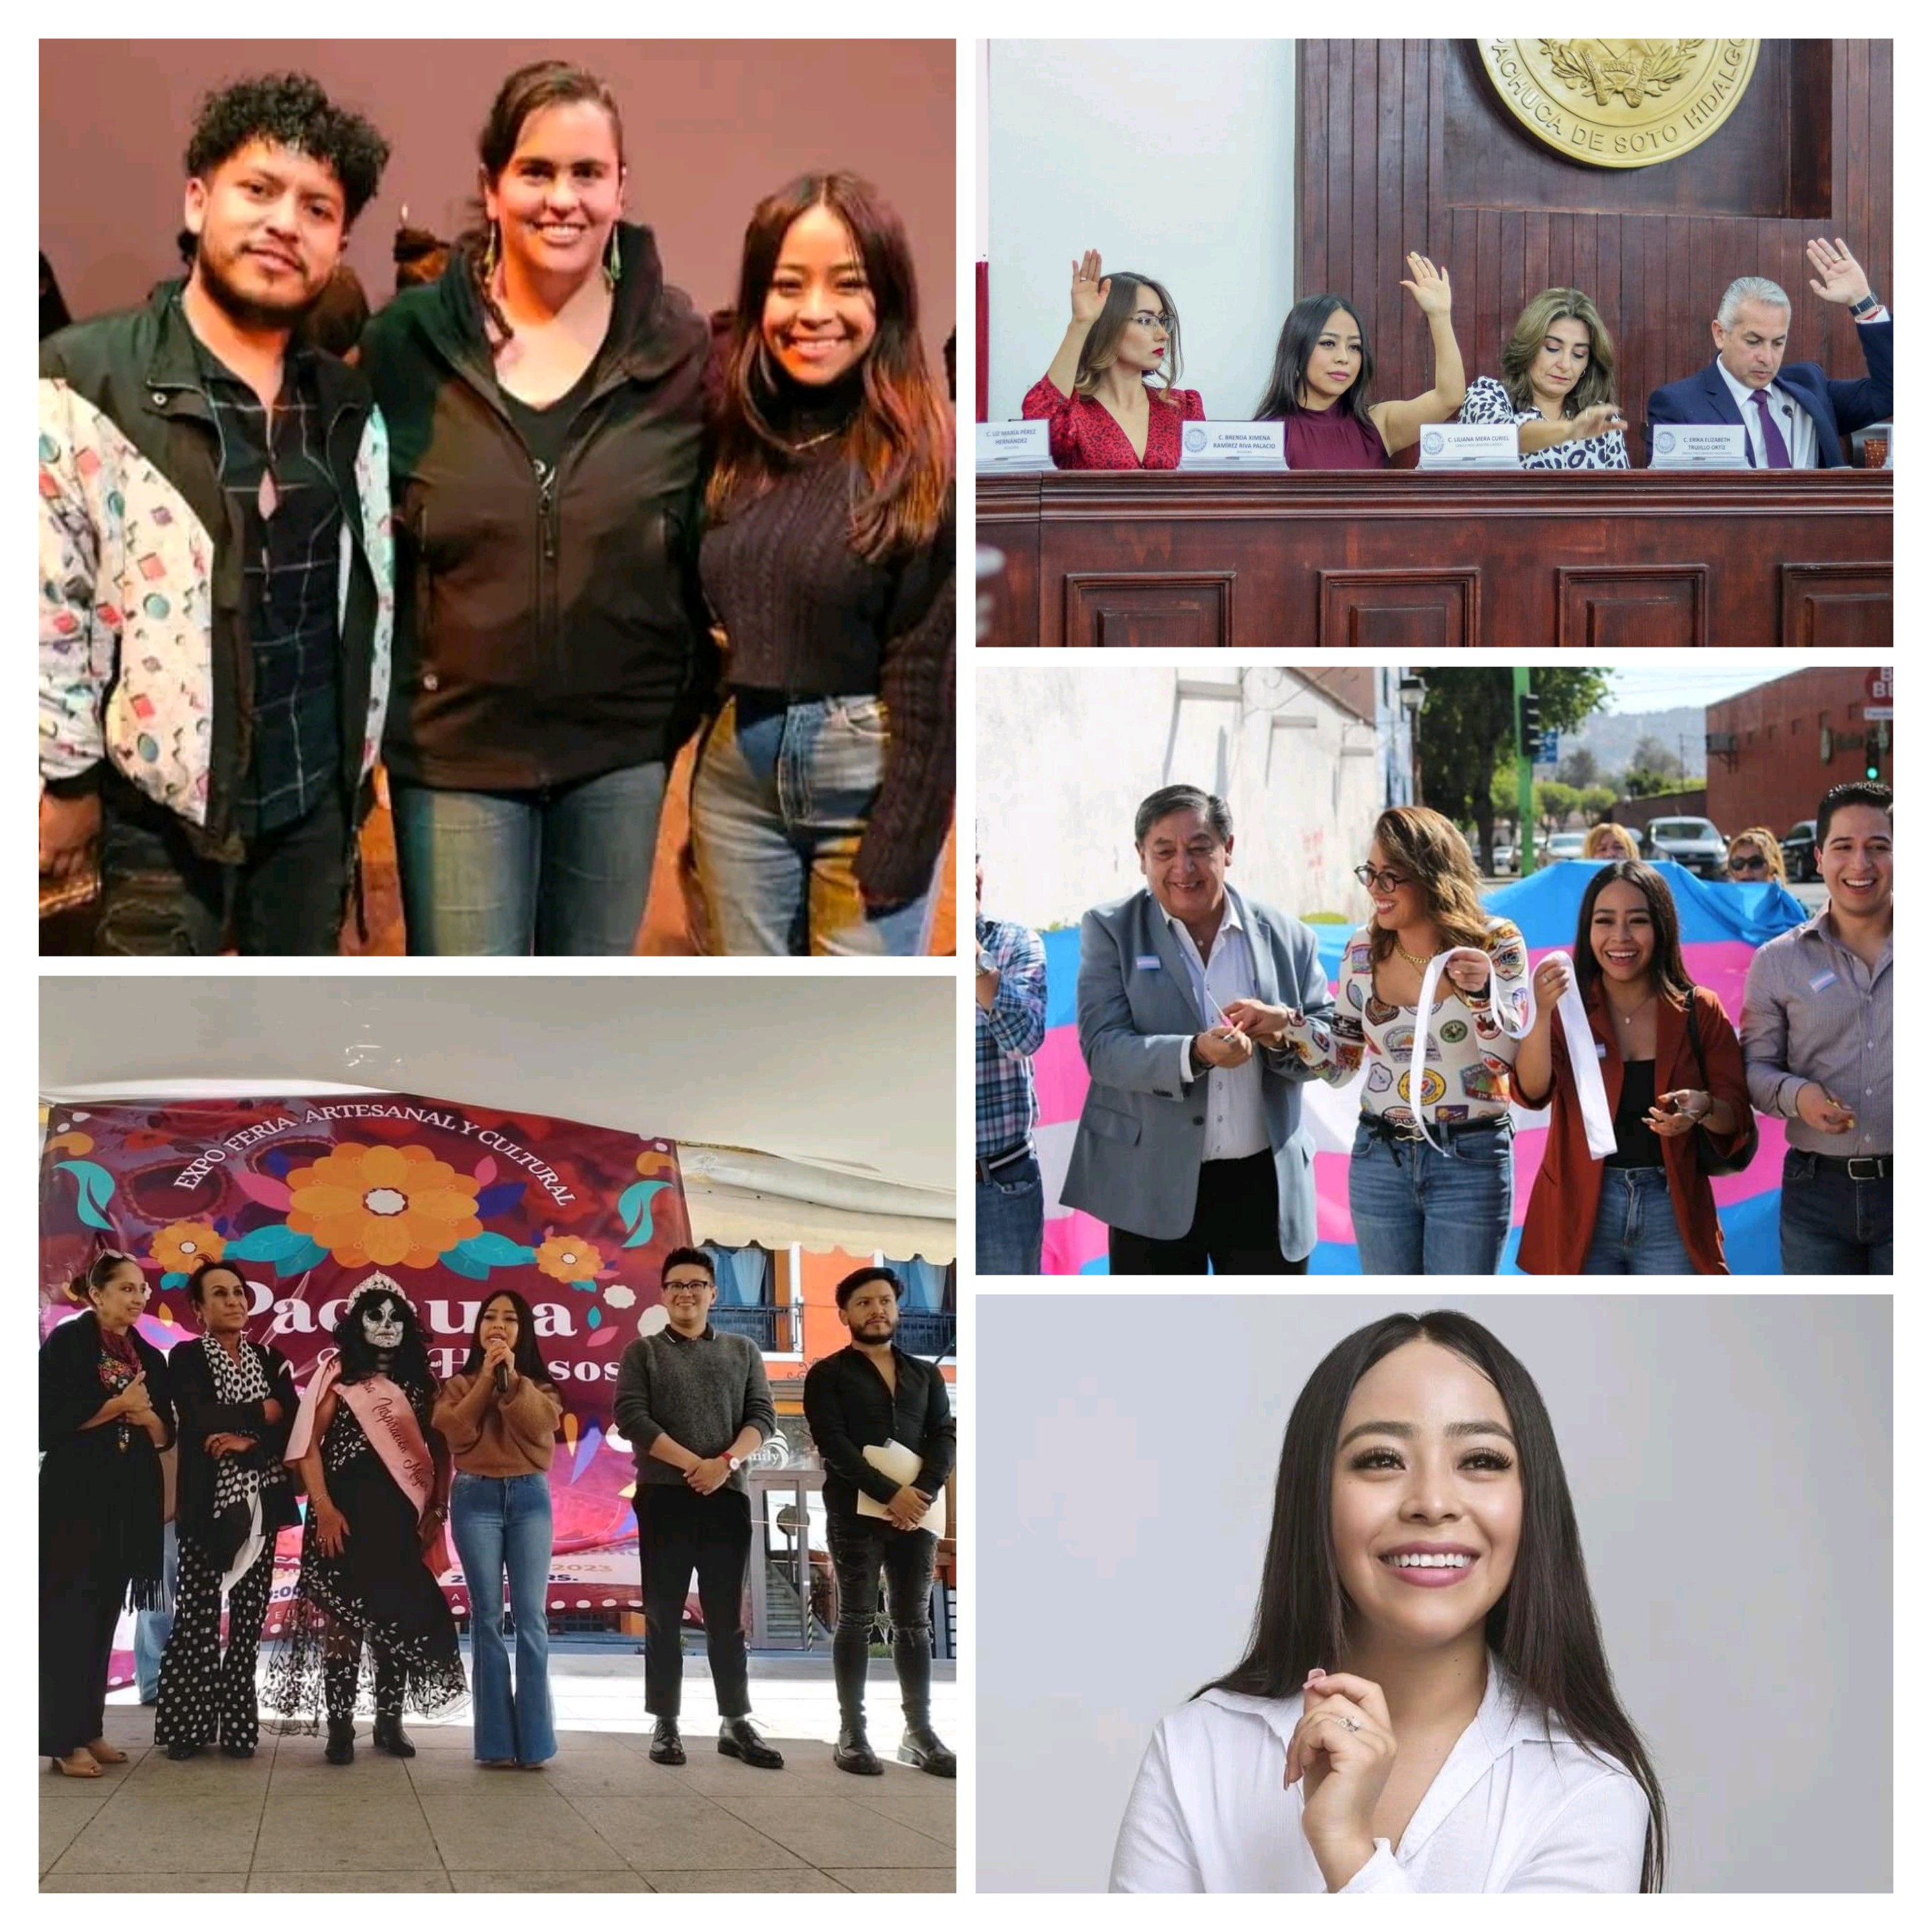 Con su visión social, su juventud y su amor al pueblo, sindica Mera buscará ser alcaldesa de Pachuca